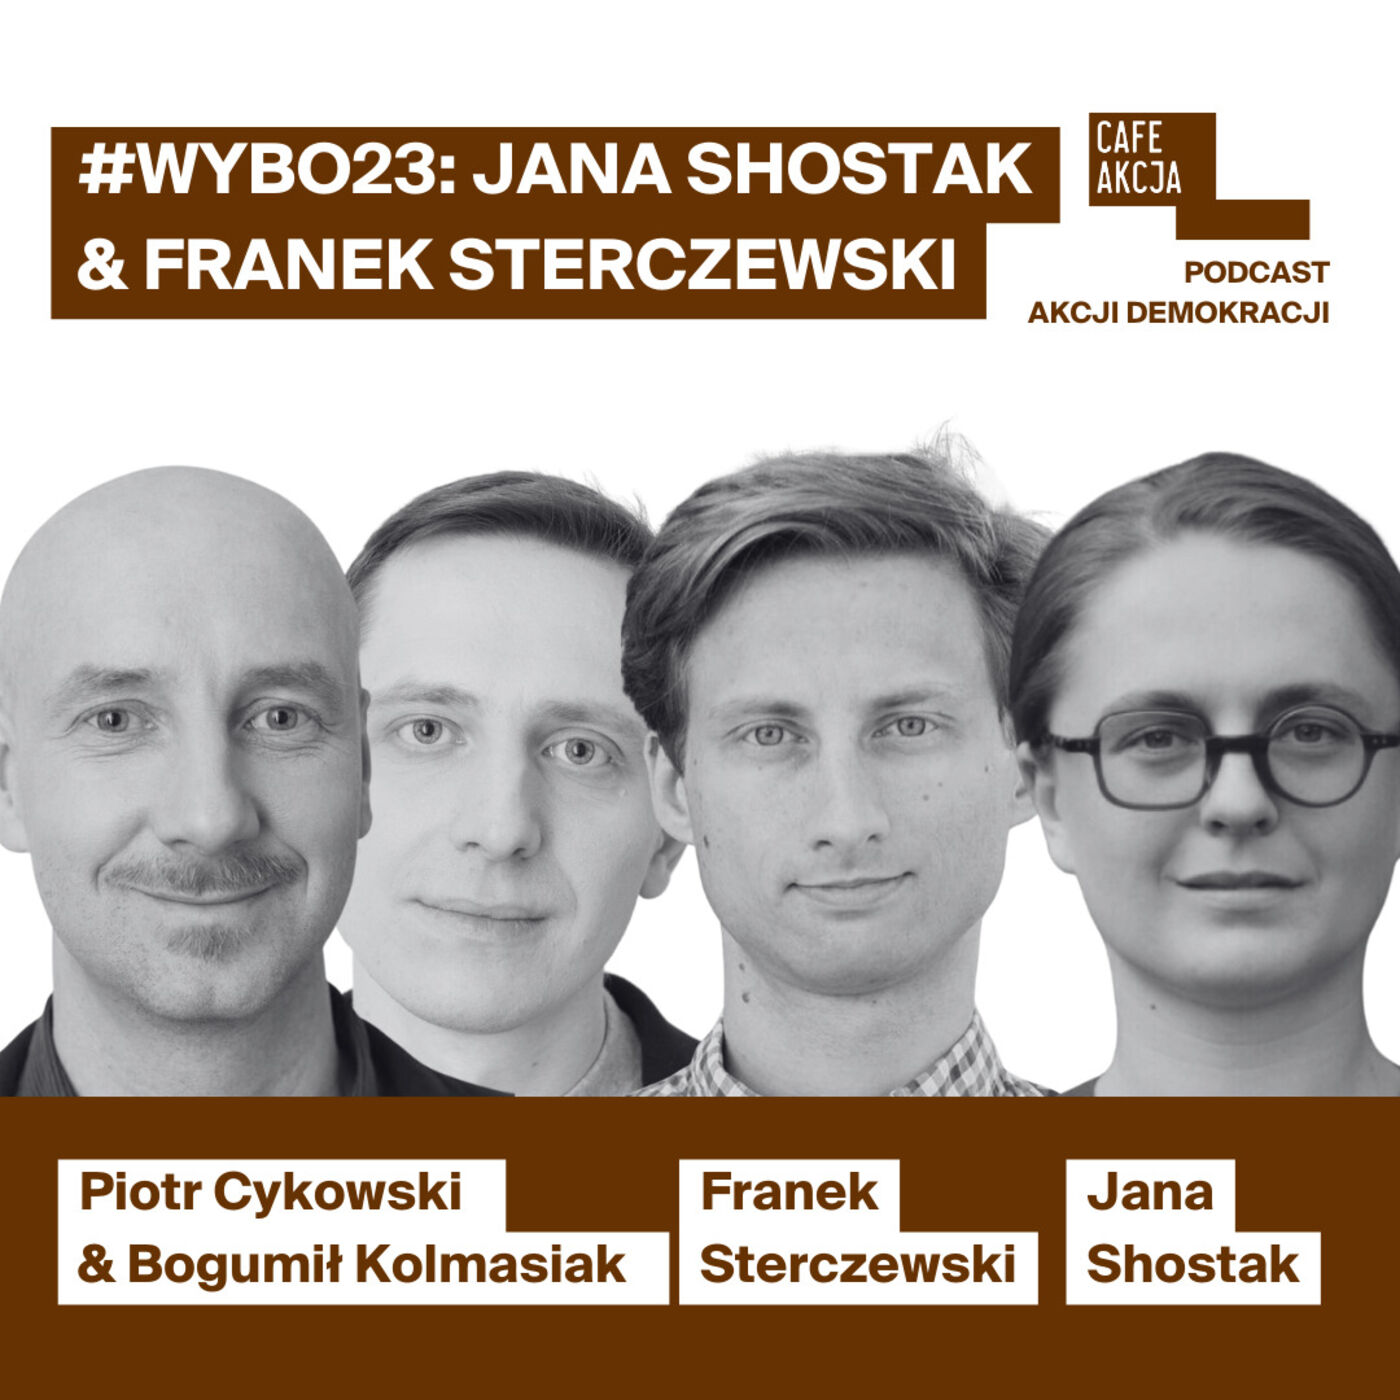 WYBO23: Jana Shostak i Franek Sterczewski